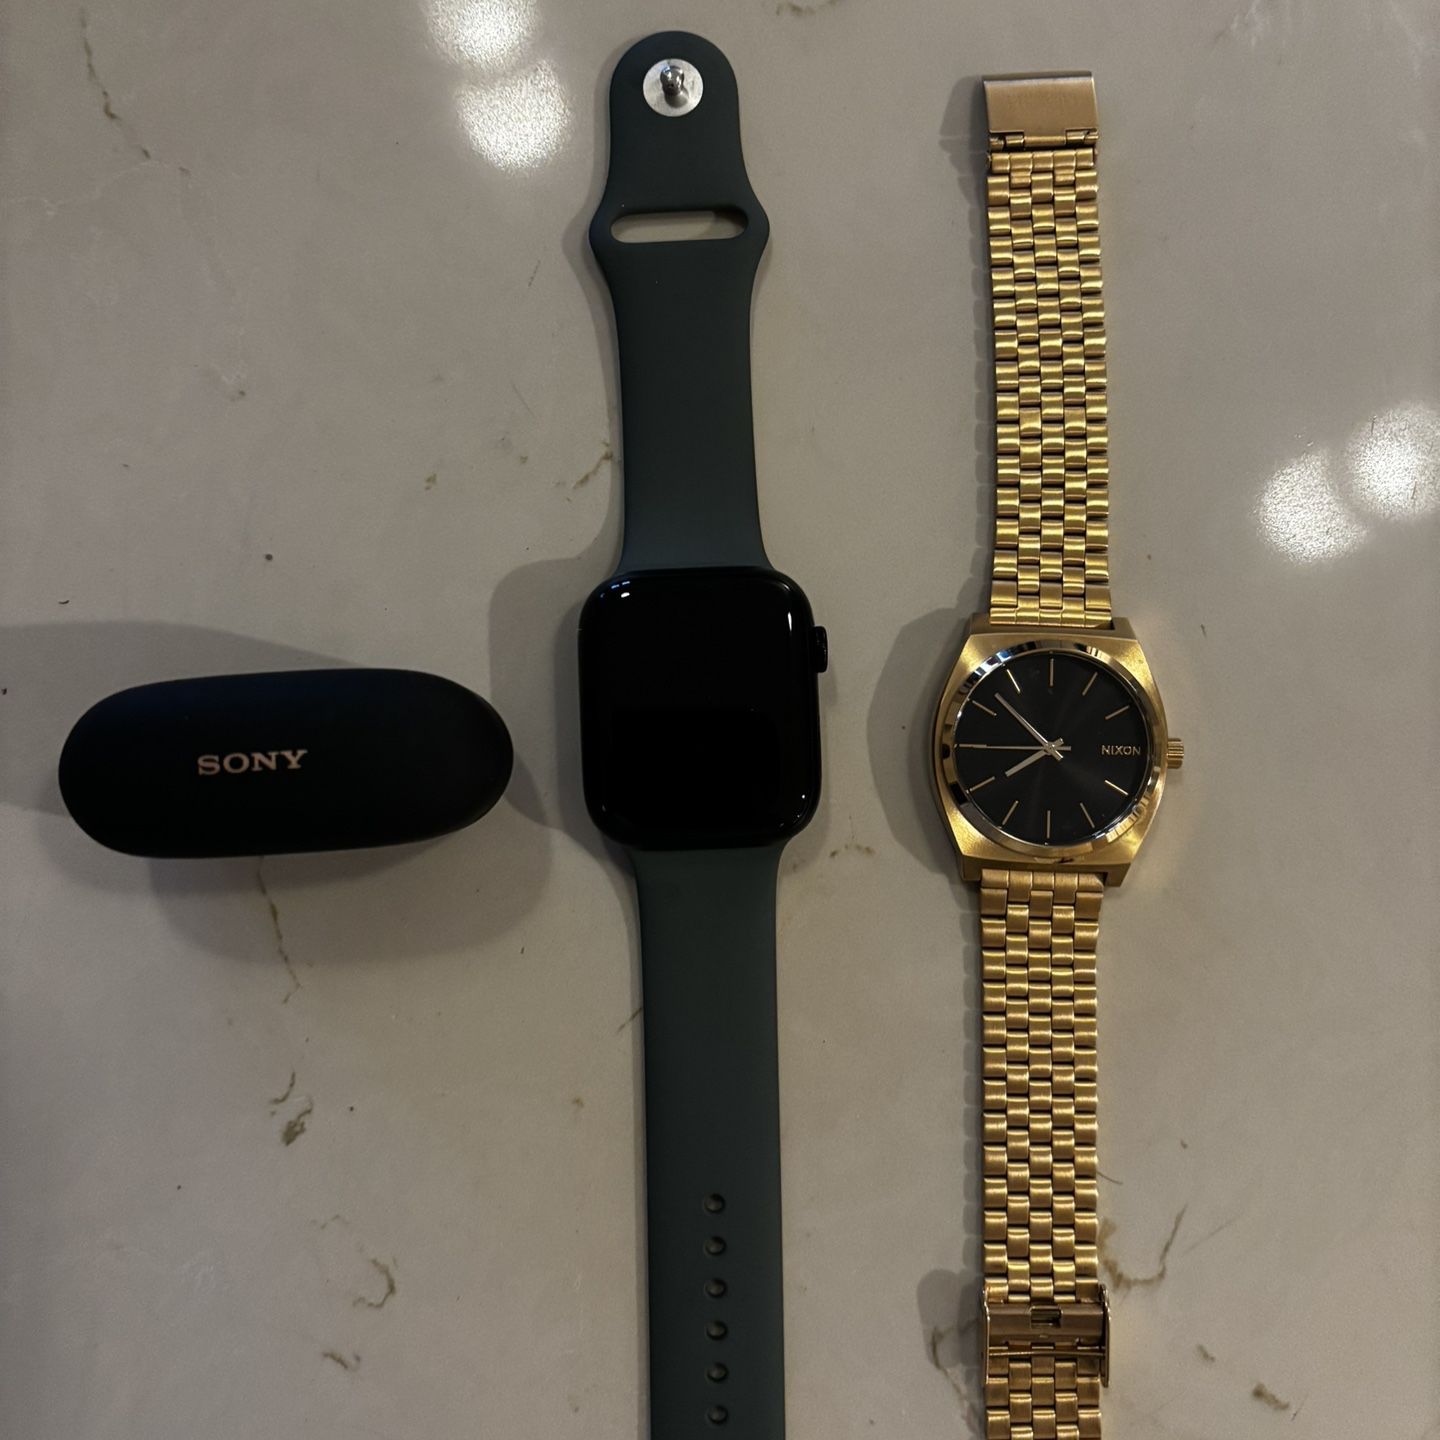 Apple Watch Series 8, Nixon Watch, Sony Ear Bud Combo